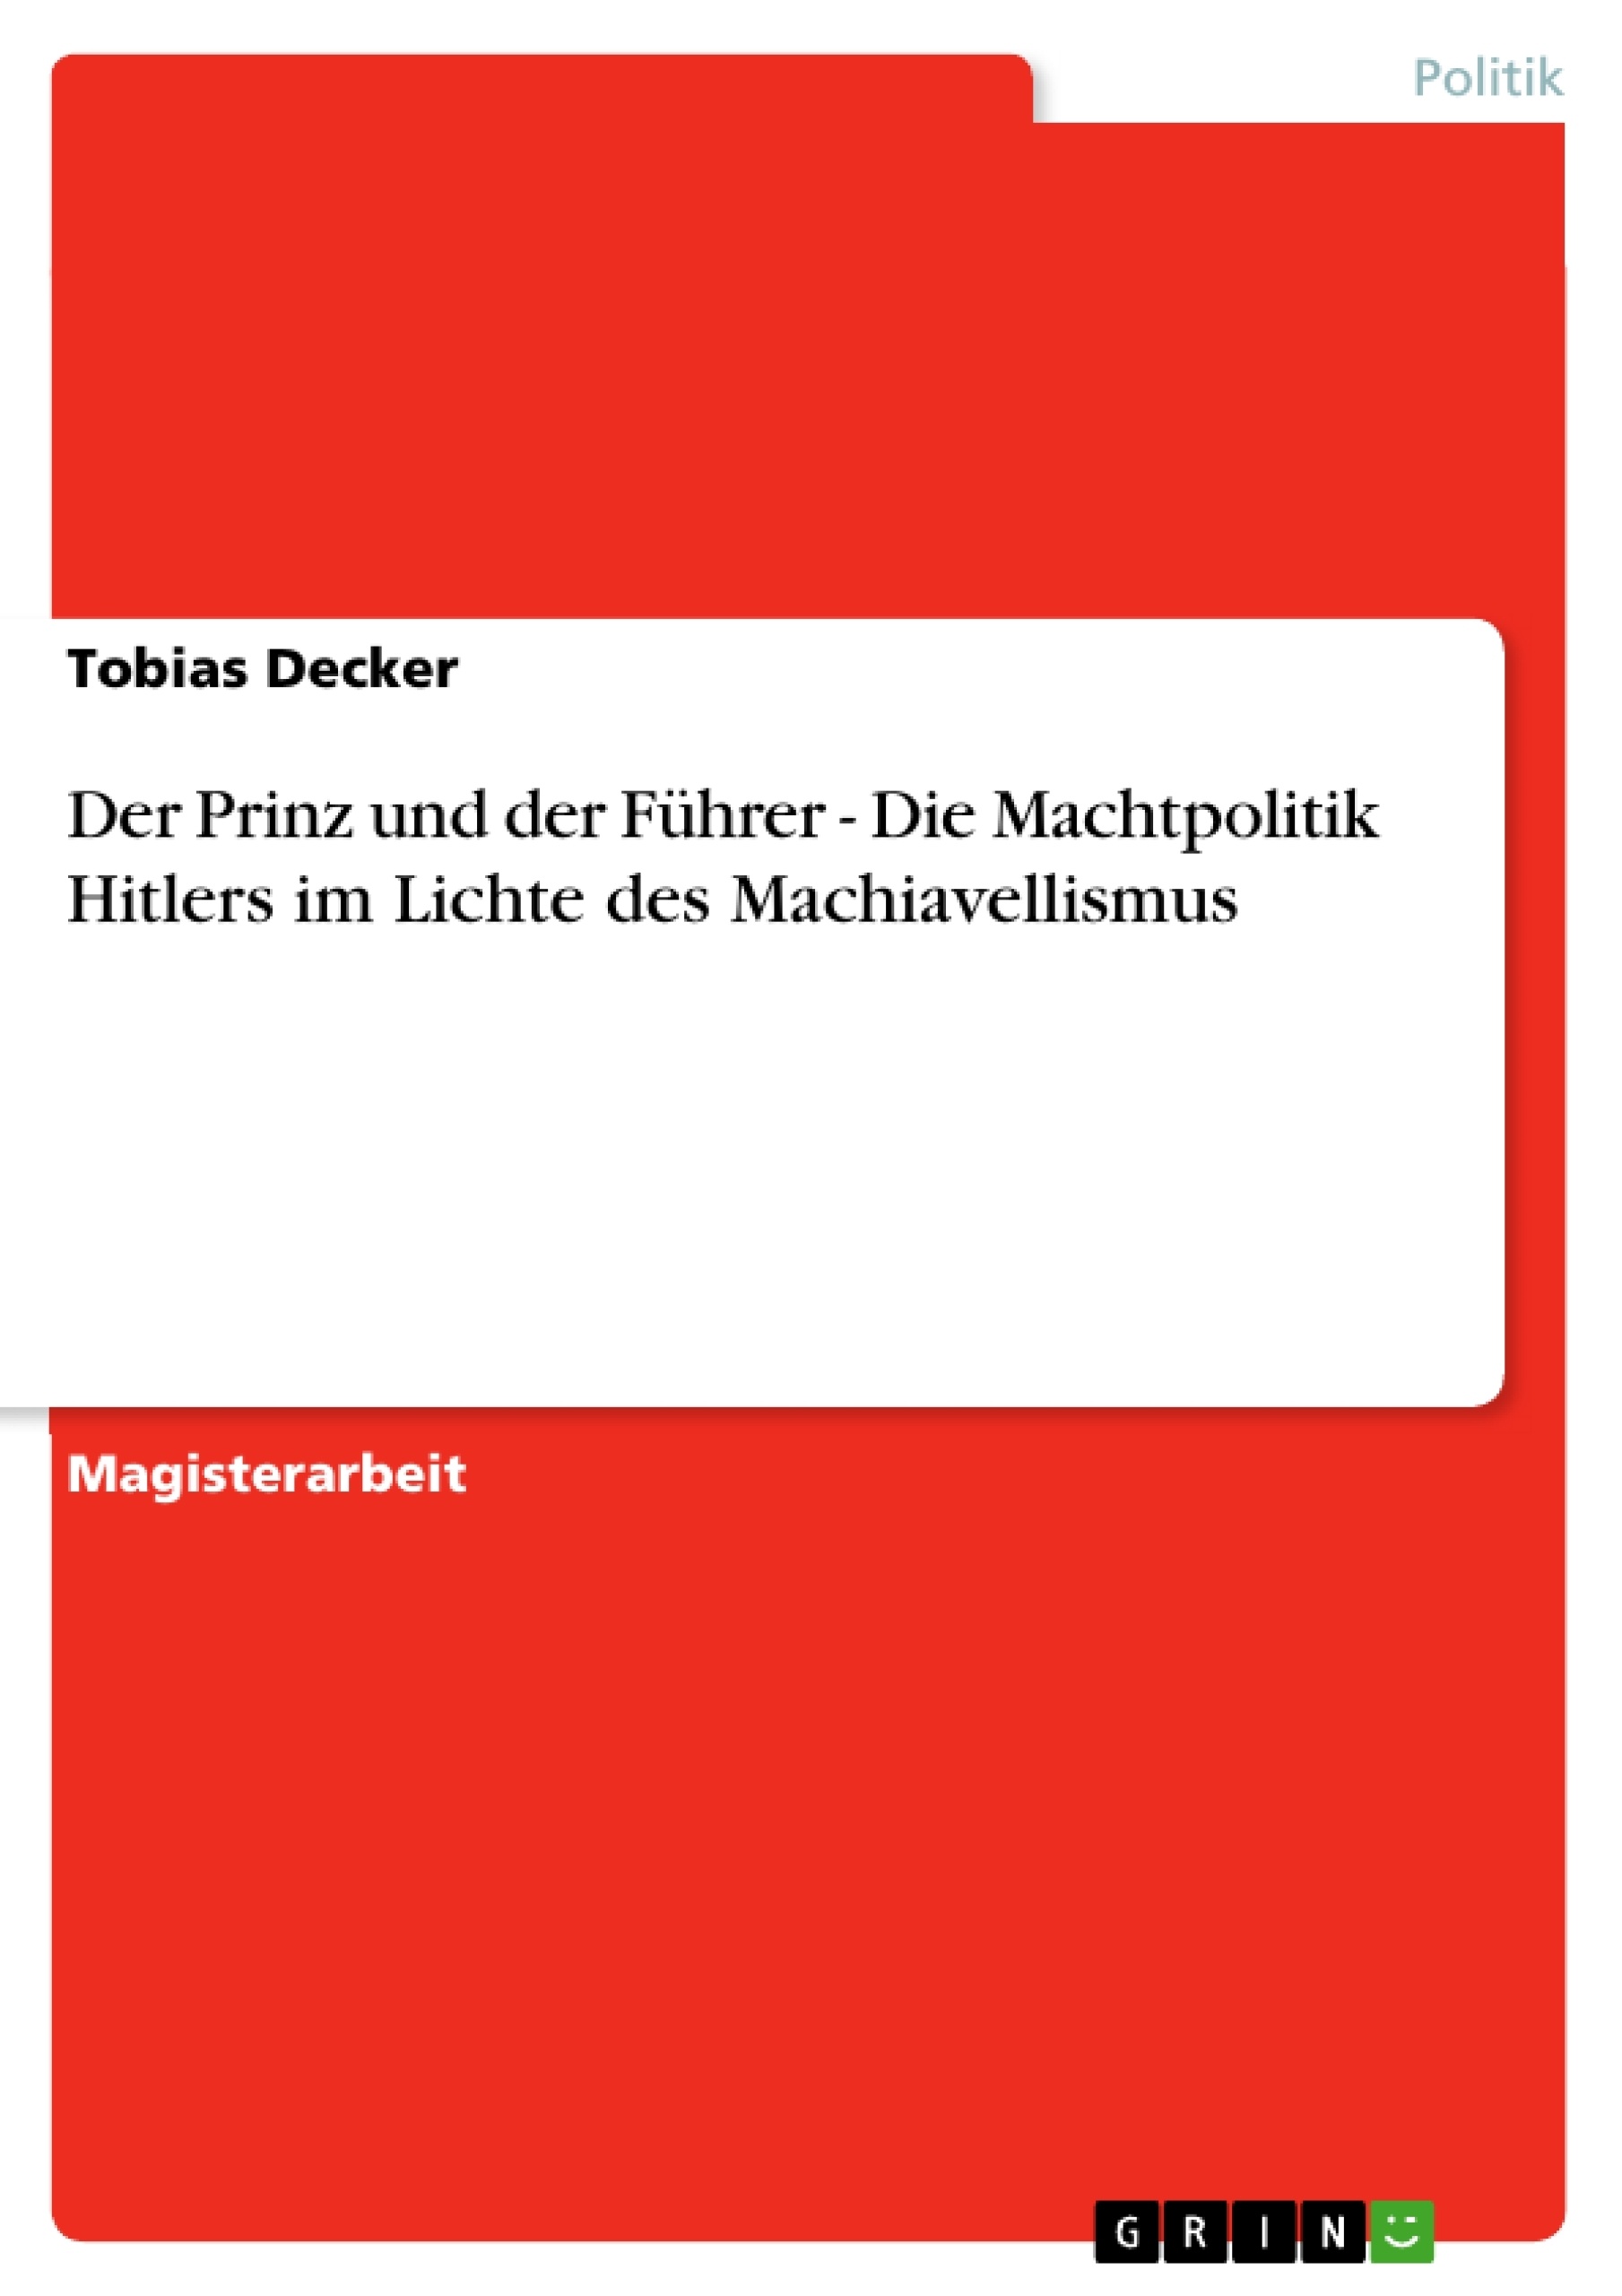 Titre: Der Prinz und der Führer - Die Machtpolitik Hitlers im Lichte des Machiavellismus